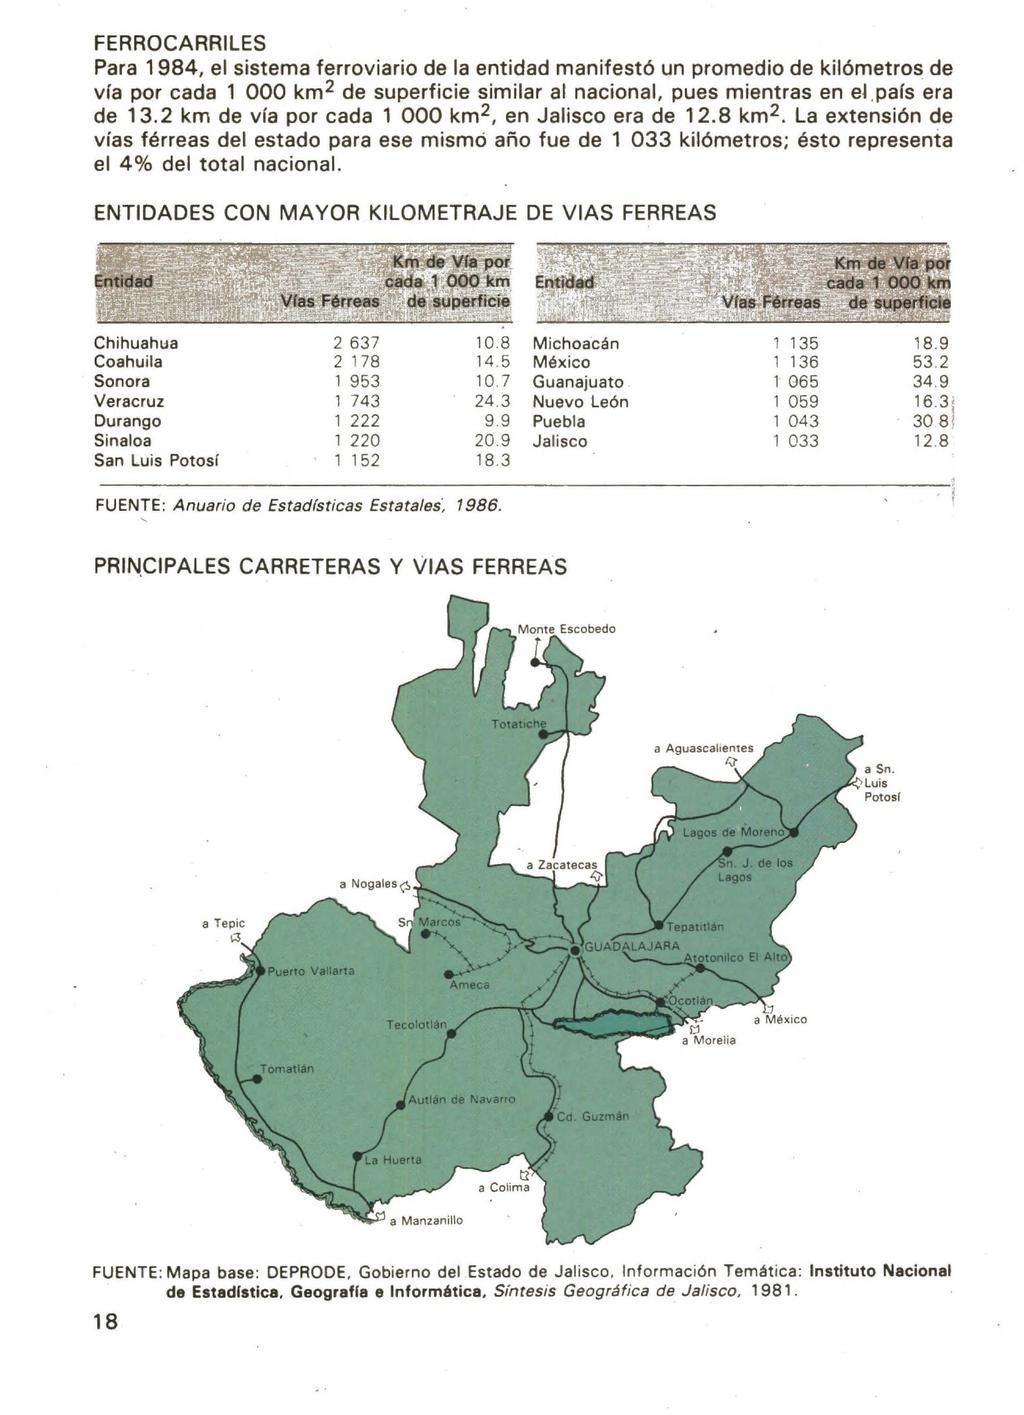 FERROCARRILES Para 198, el sistema ferroviario de la entidad manifestó un promedio de kilómetros de vía por cada 1 000 km 2 de superficie similar al nacional, pues mientras en eí país era de 13.